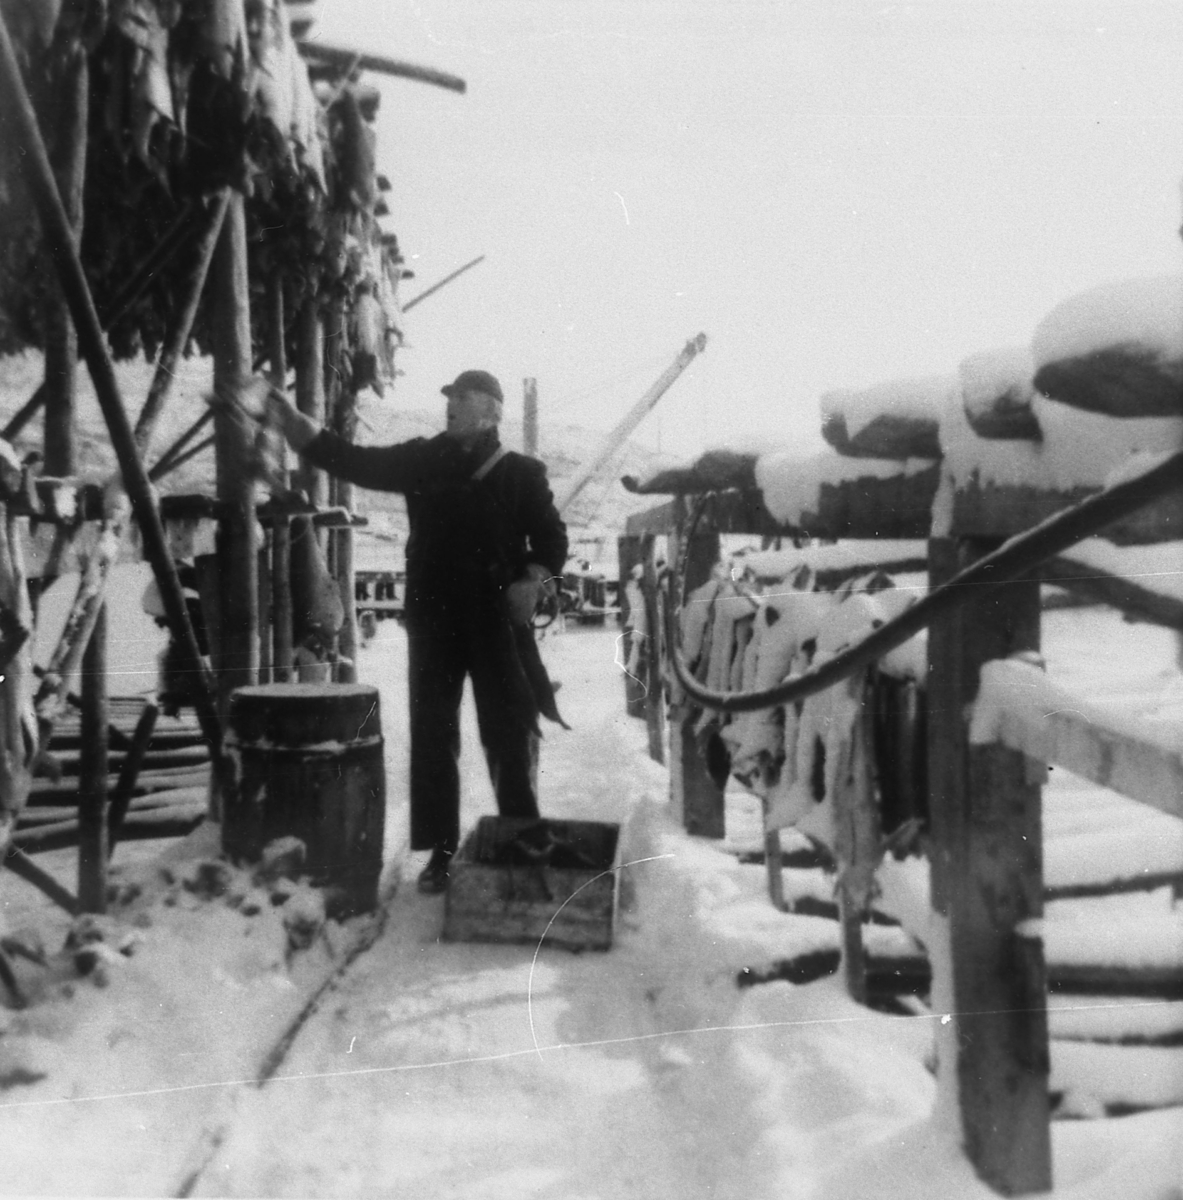 Arbeid på fiskebruket i Skatvik, Tranøy 1963